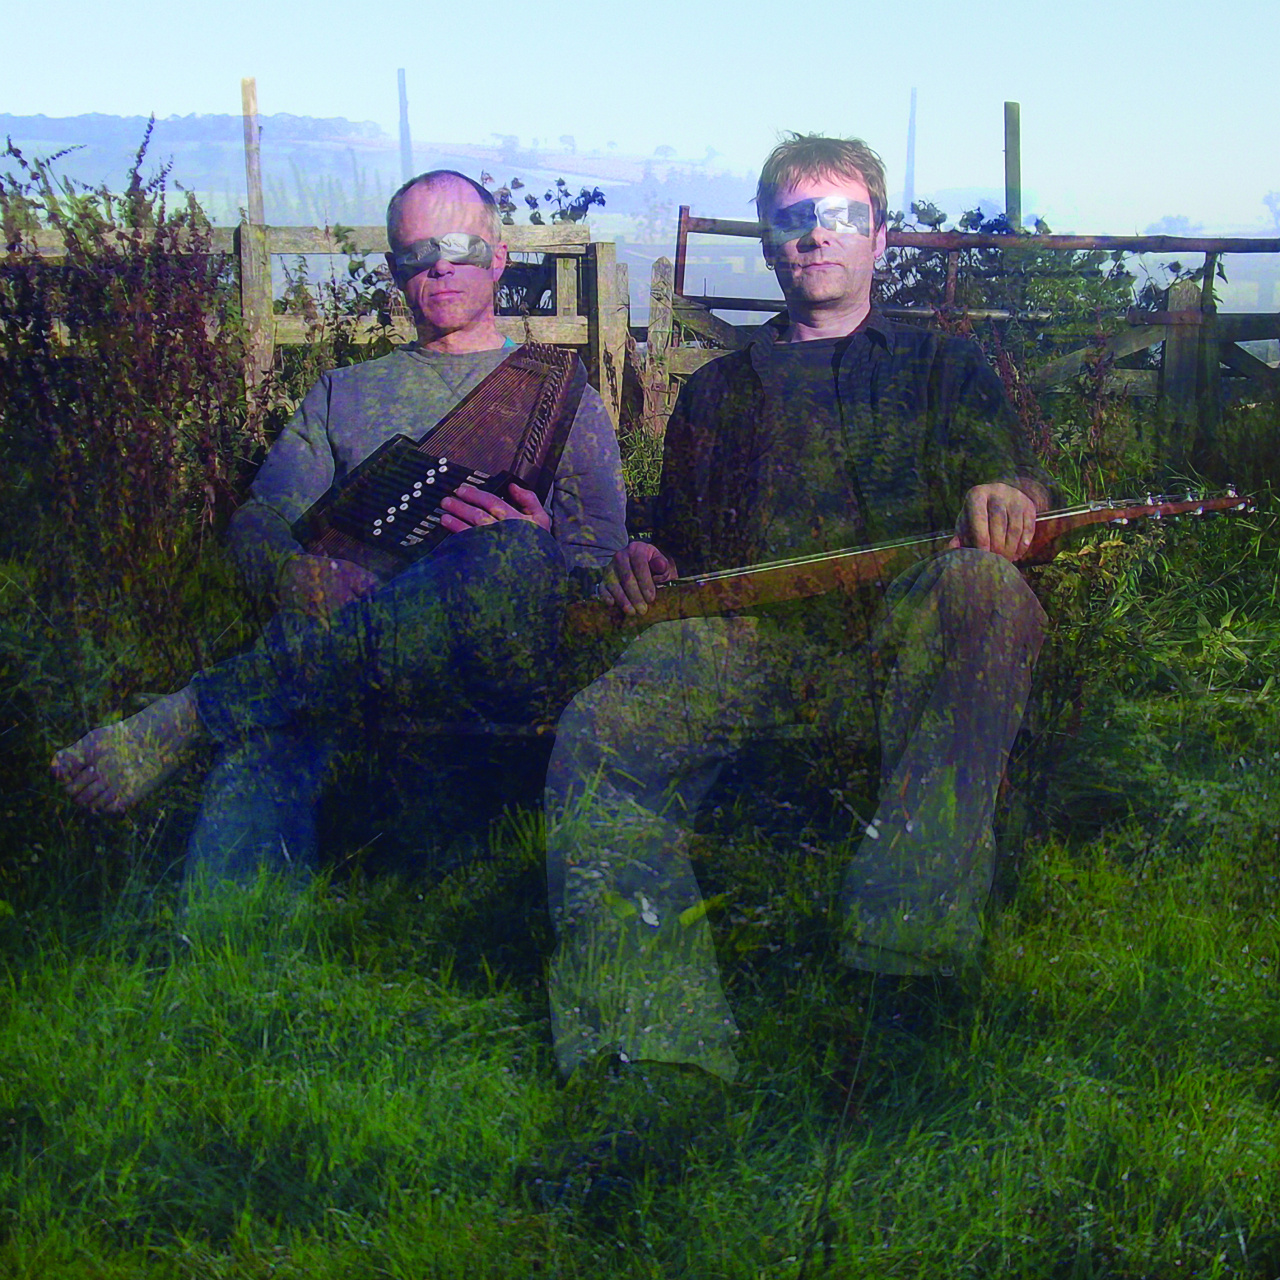 Zwei Männer sitzen mit Musikinstrumenten in der Hand auf einer Wiese, ihre Augen sind mit silbernem Klebeband verhüllt